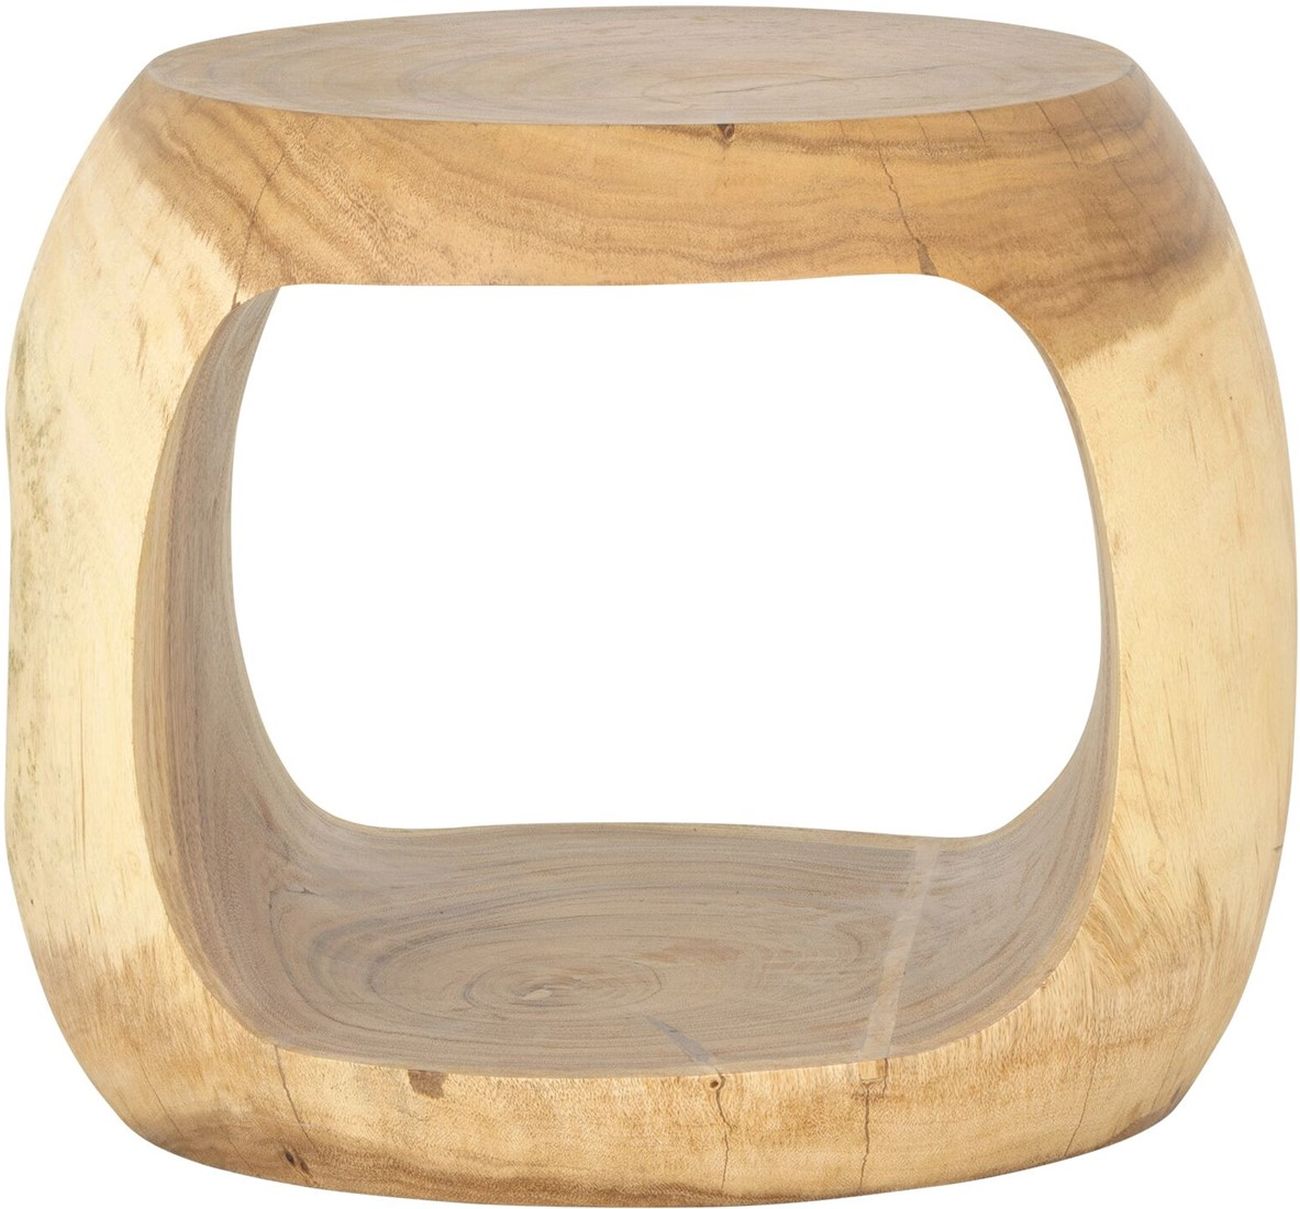 Der Beistelltisch Paso überzeugt mit seinem modernen Stil. Gefertigt wurde er aus Suarholz, welches einen natürlichen Farbton besitzt. Der Tisch besitzt einen Durchmesser von 50 cm